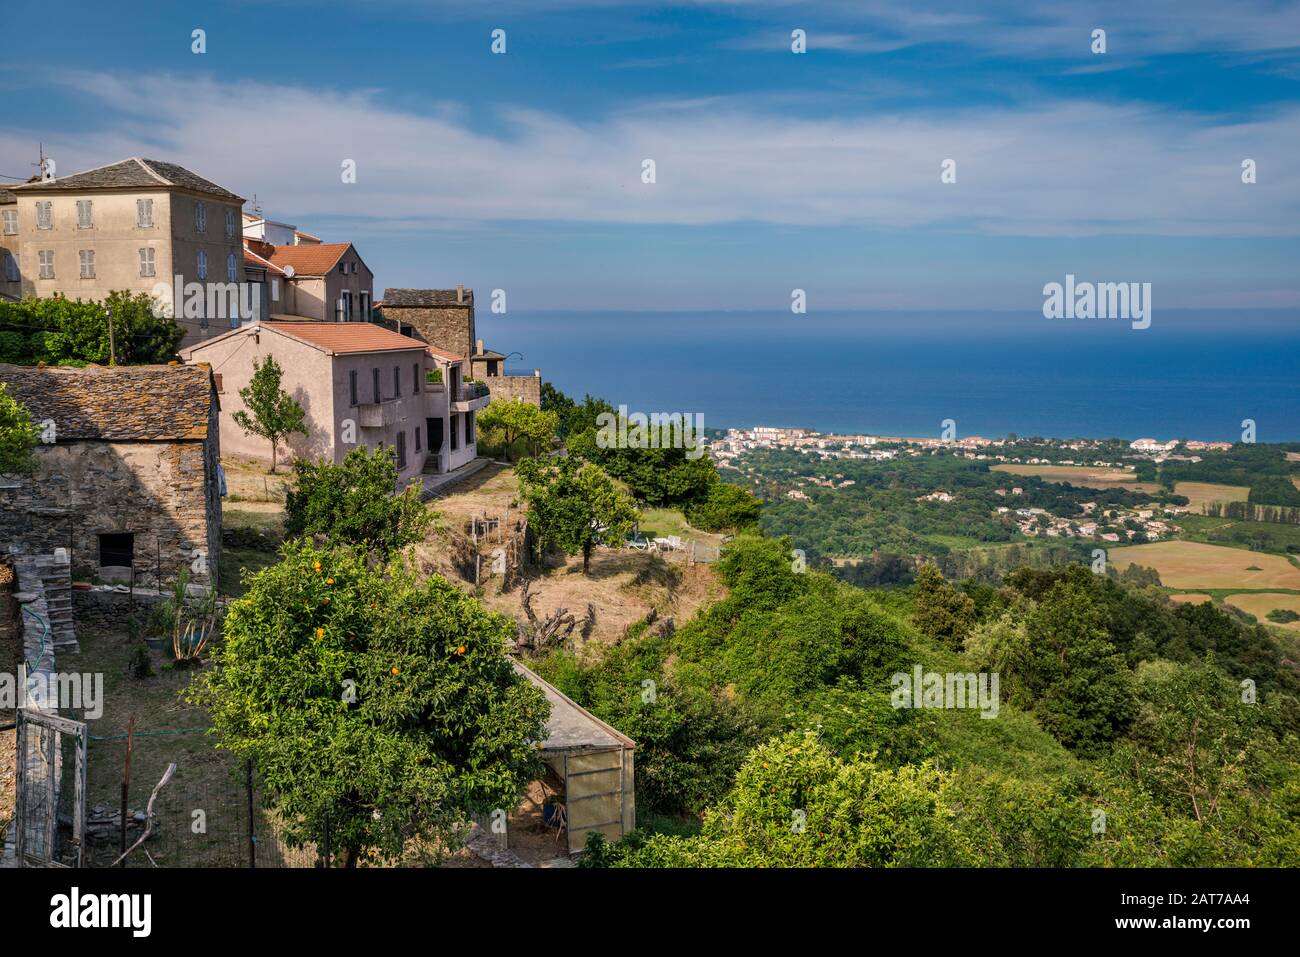 Hill ville de San Nicolao, Costa Verde mer Coast, Mer Tyrrhénienne en distance, Castagniccia région, Haute-Corse département, Corse, France Banque D'Images